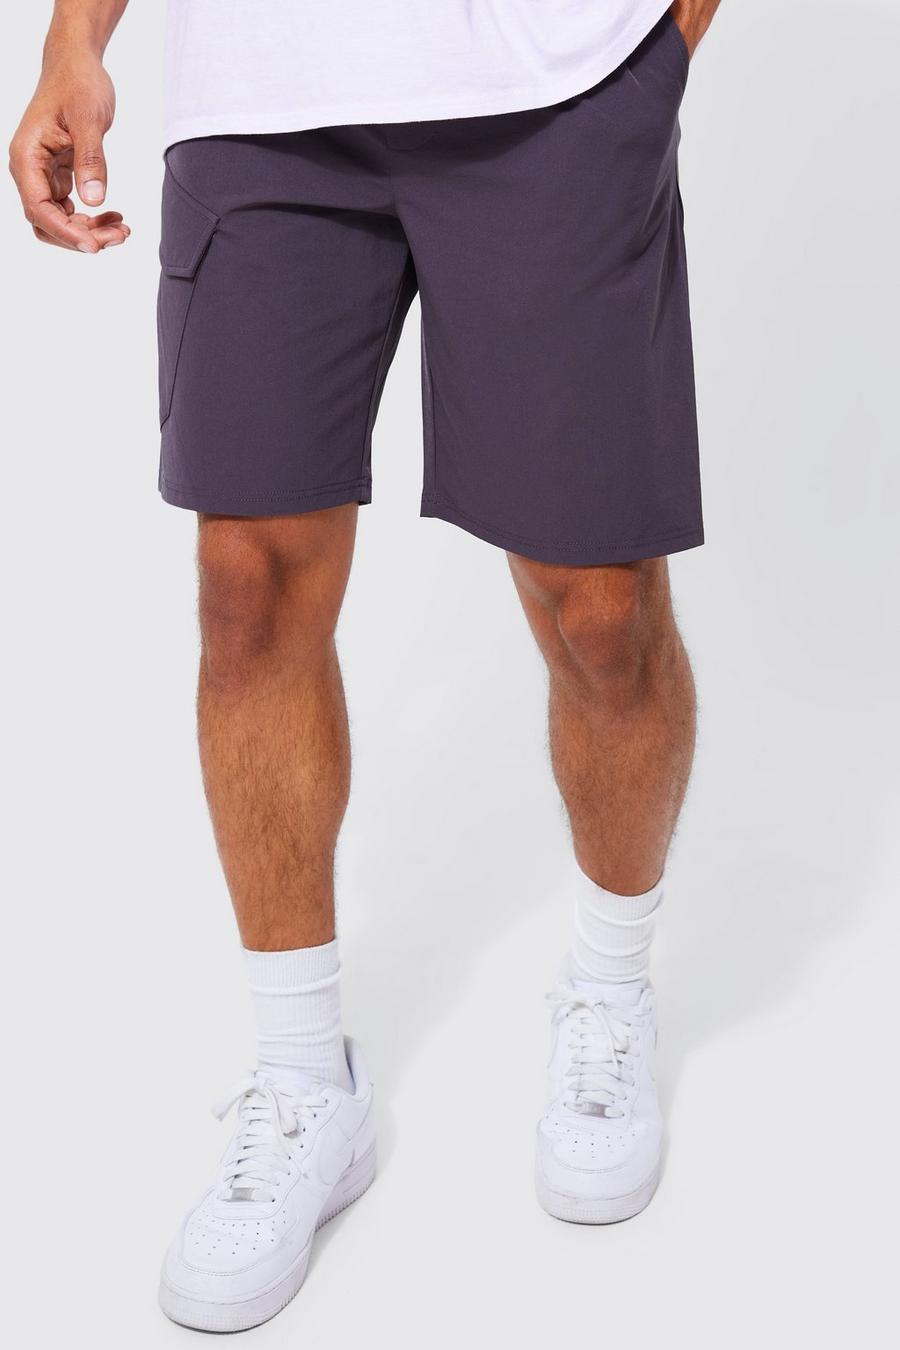 Pantaloncini elasticizzati comodi in Stretch leggero, Charcoal